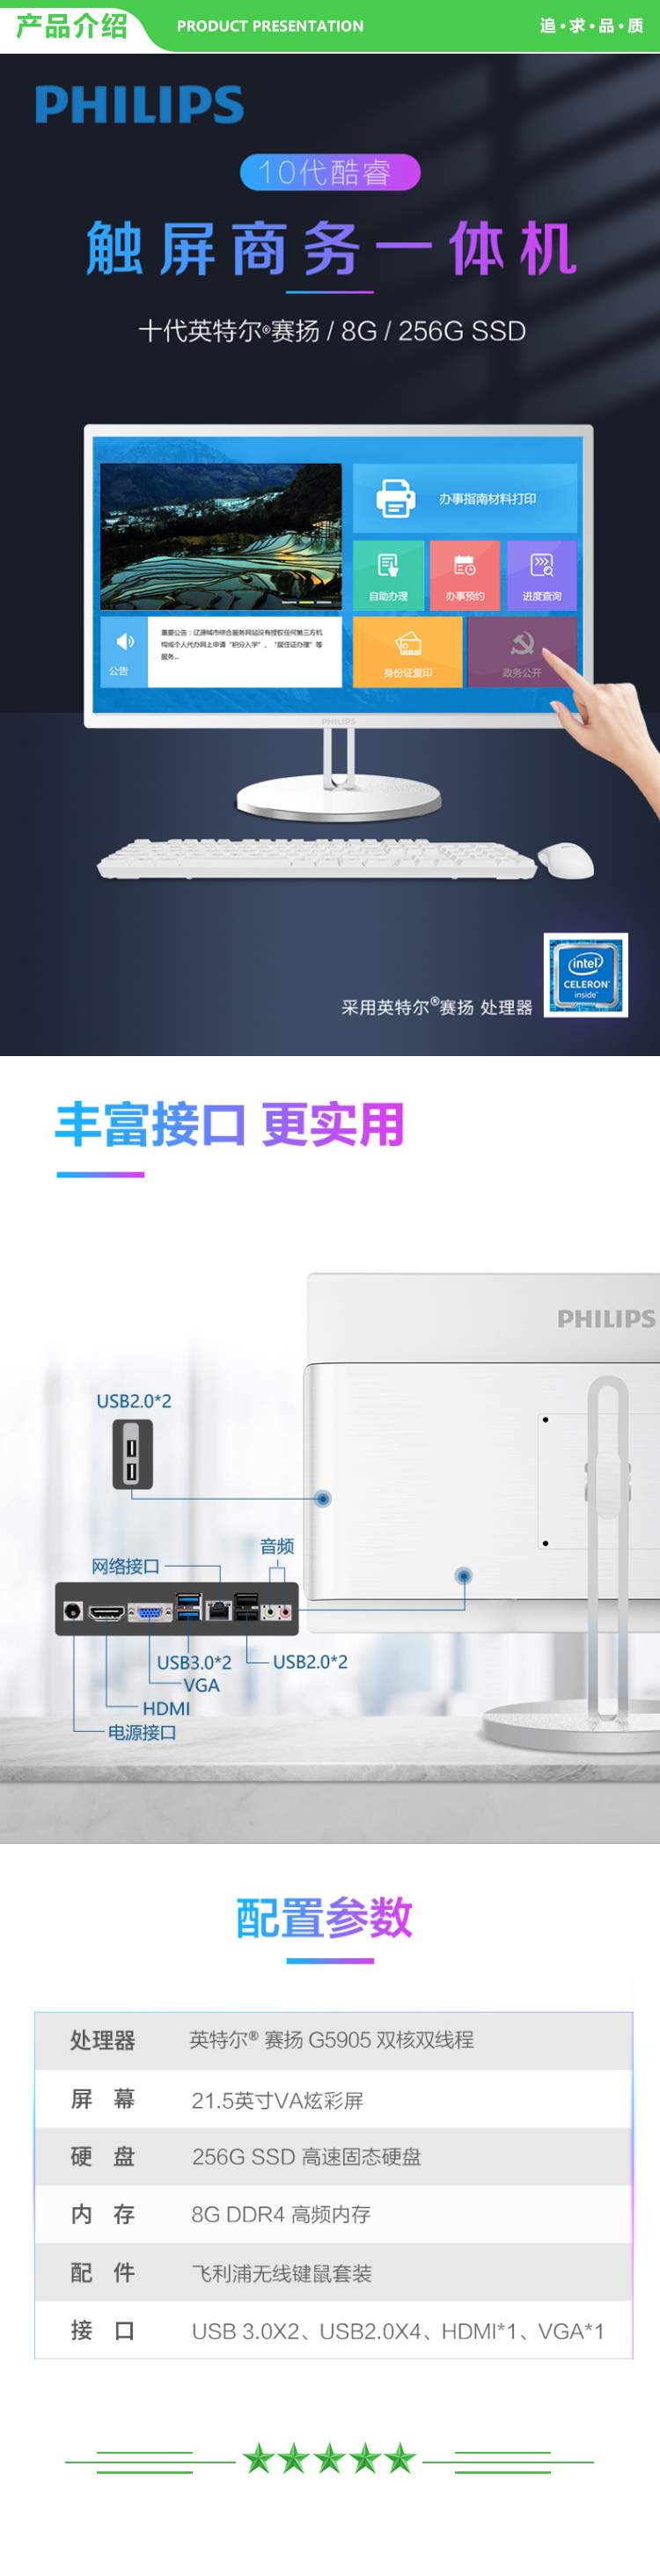 飞利浦 PHILIPS A222S9Q 21.5英寸触控款 (Intel G5905 8G 256G SSD WiFi )一体台式机电脑 白色 .jpg